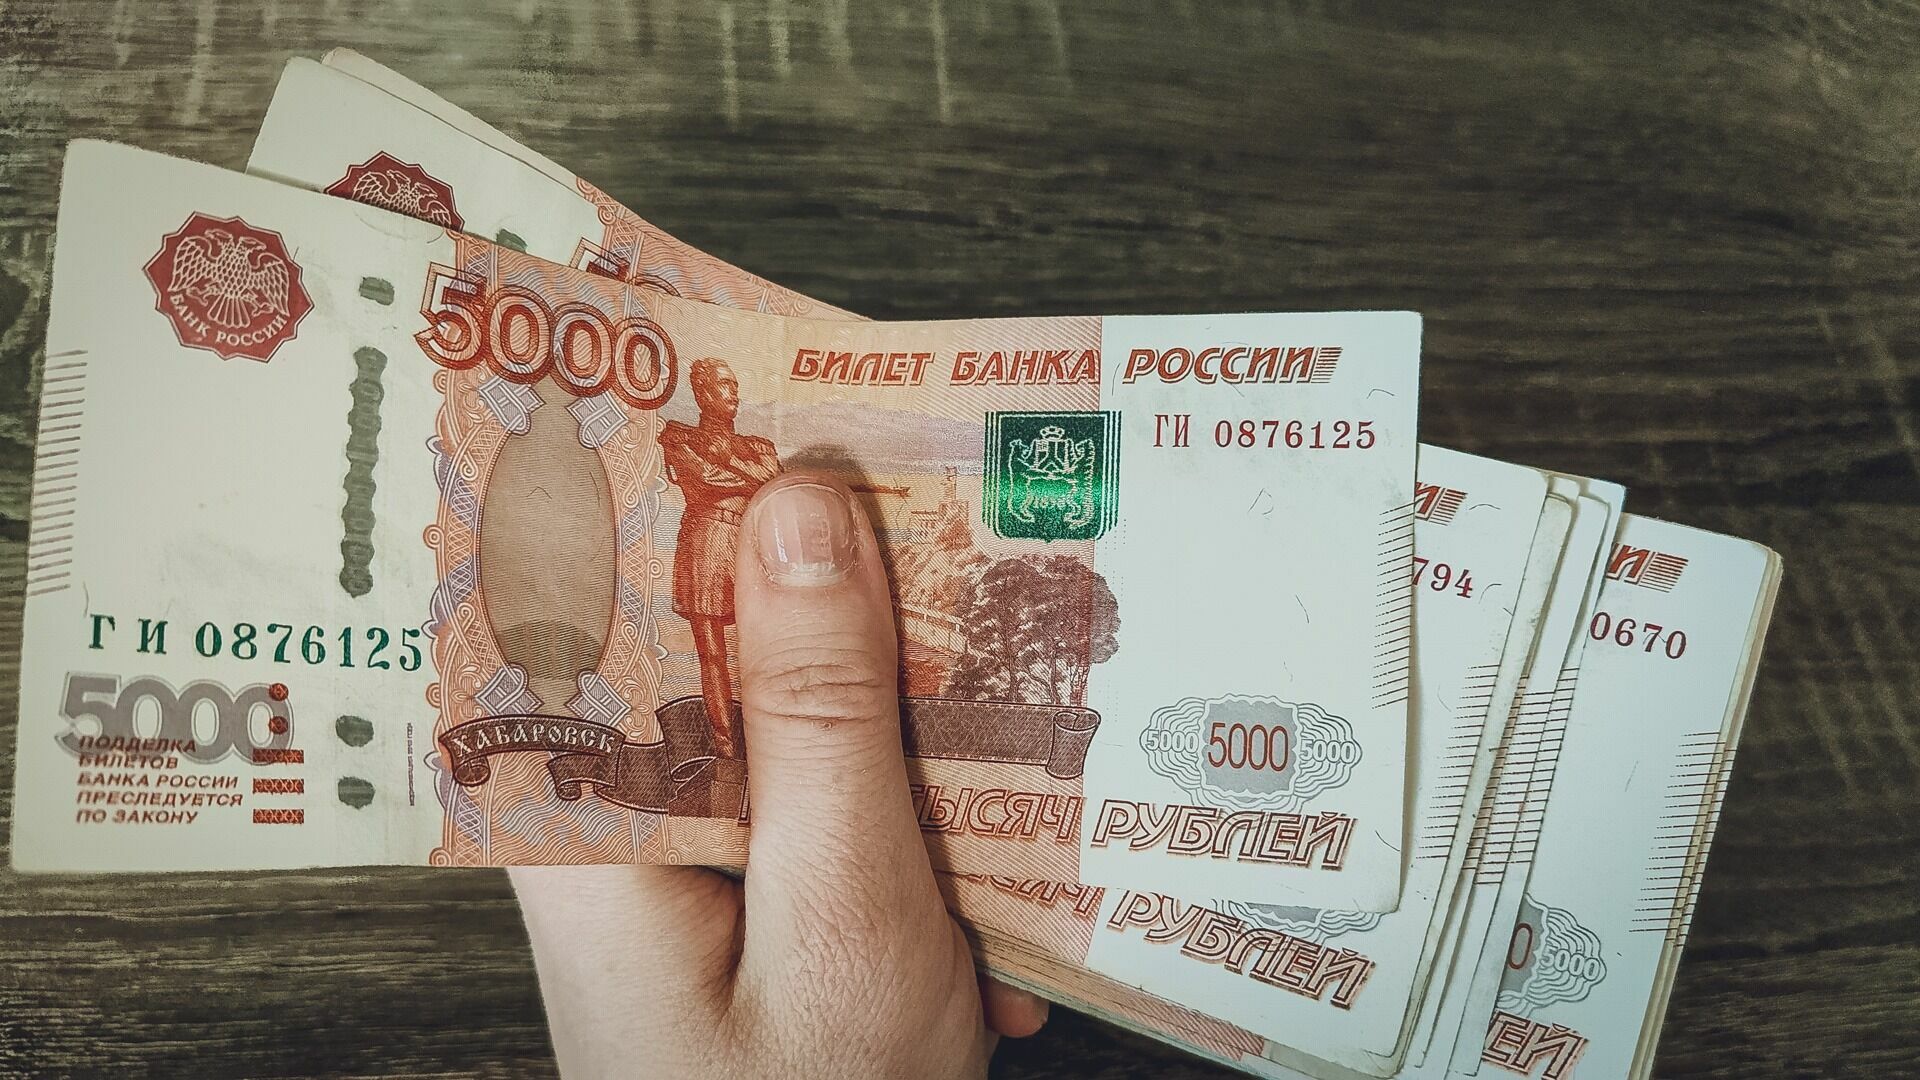 «Веселье с японкой» обошлось в 3 миллиона рублей жителю Приморья